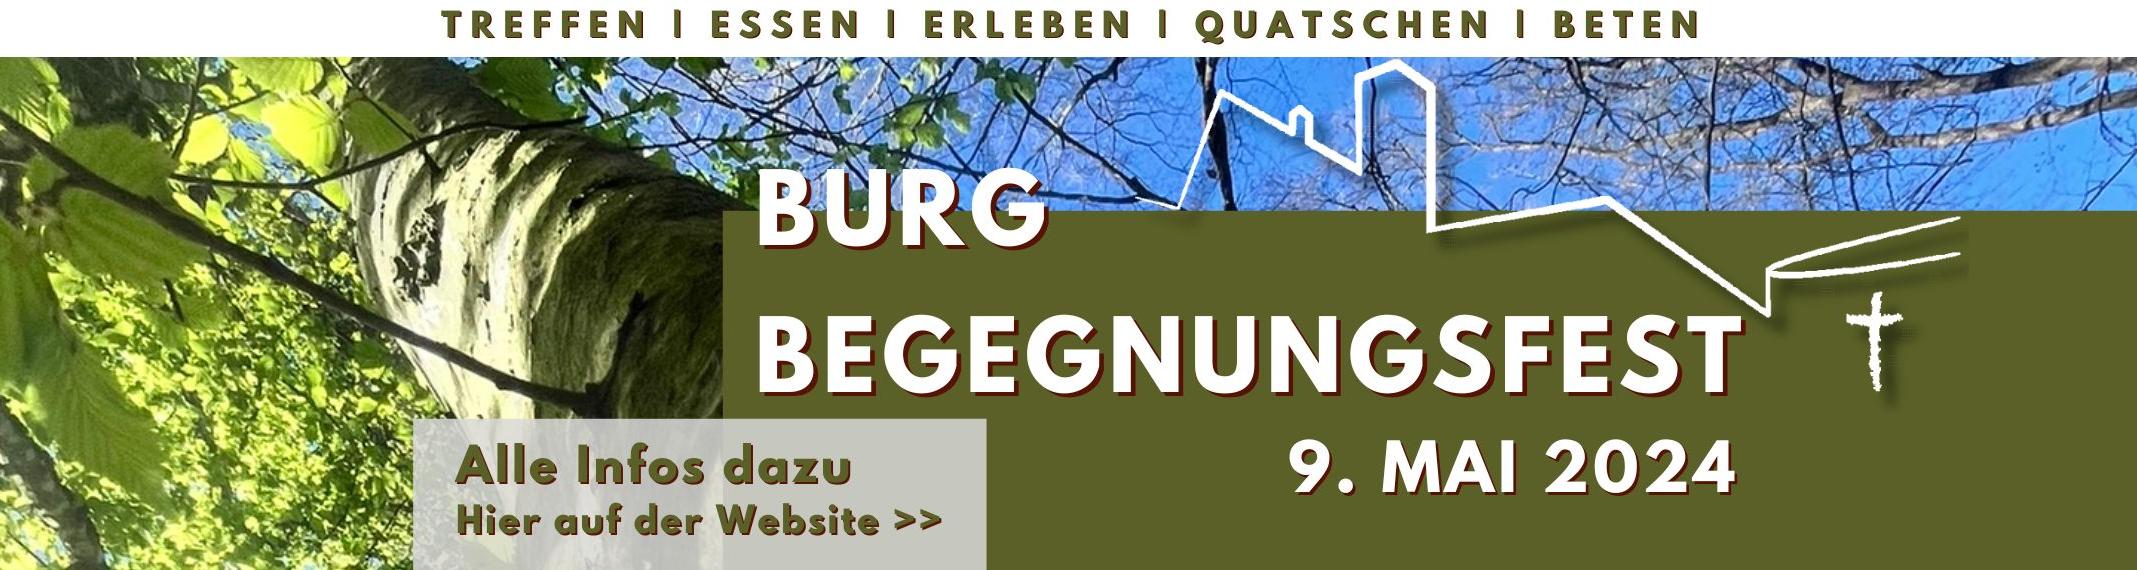 Burgbegegnungsfest 2024